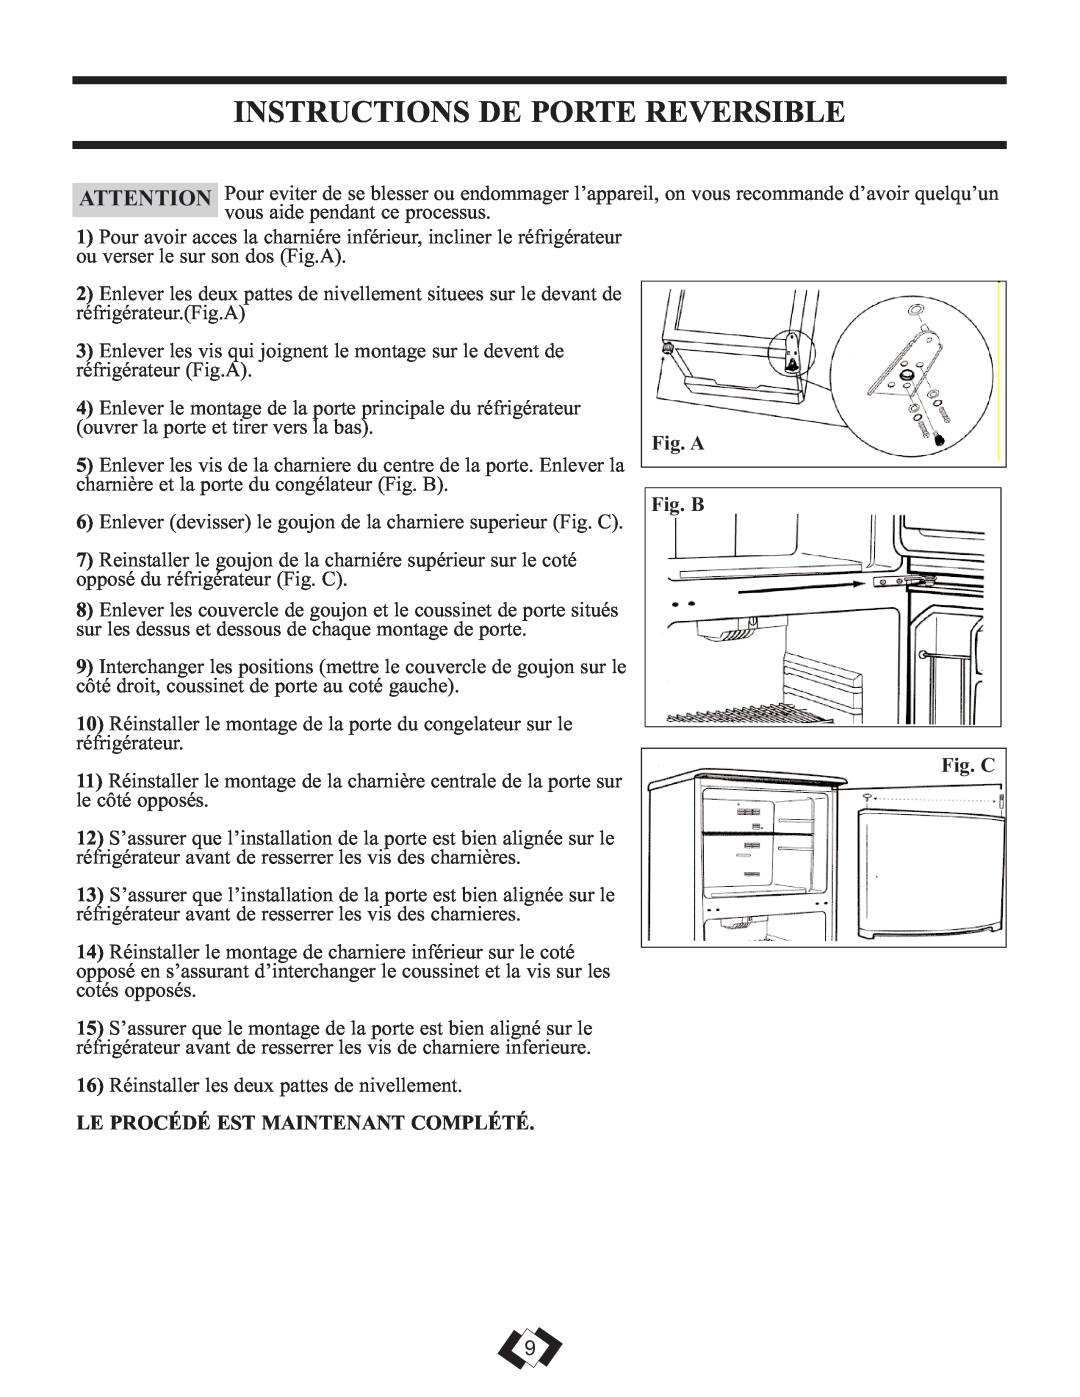 Sunbeam DFF258BLSSB Instructions De Porte Reversible, Fig. A, Fig. B, Fig. C, Le Procédé Est Maintenant Complété 